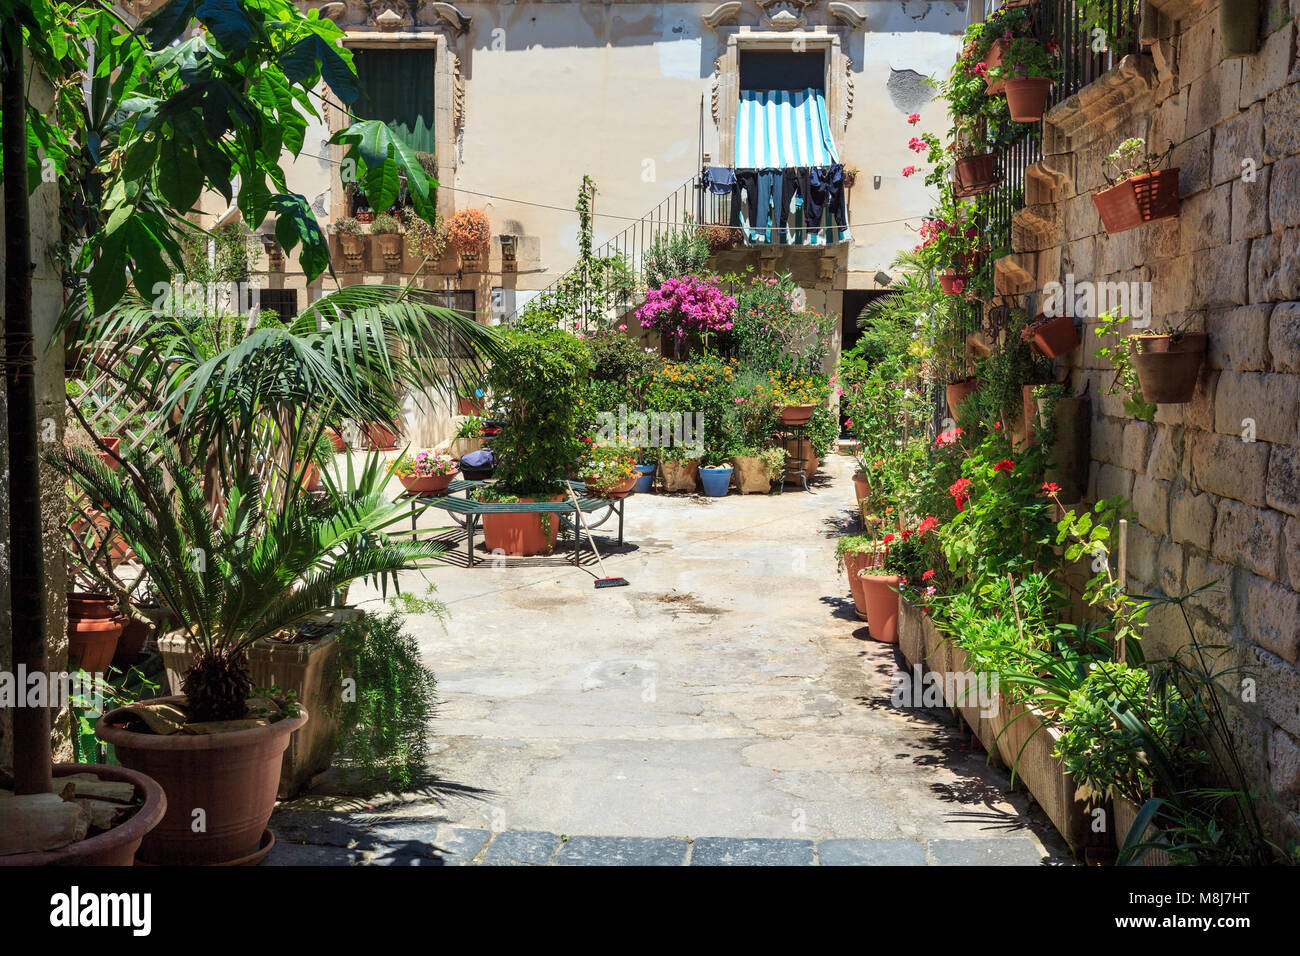 Insel Ortigia in der Stadt Syrakus street view, Sizilien, Italien. Schöne Reise Foto von Sizilien. Stockfoto